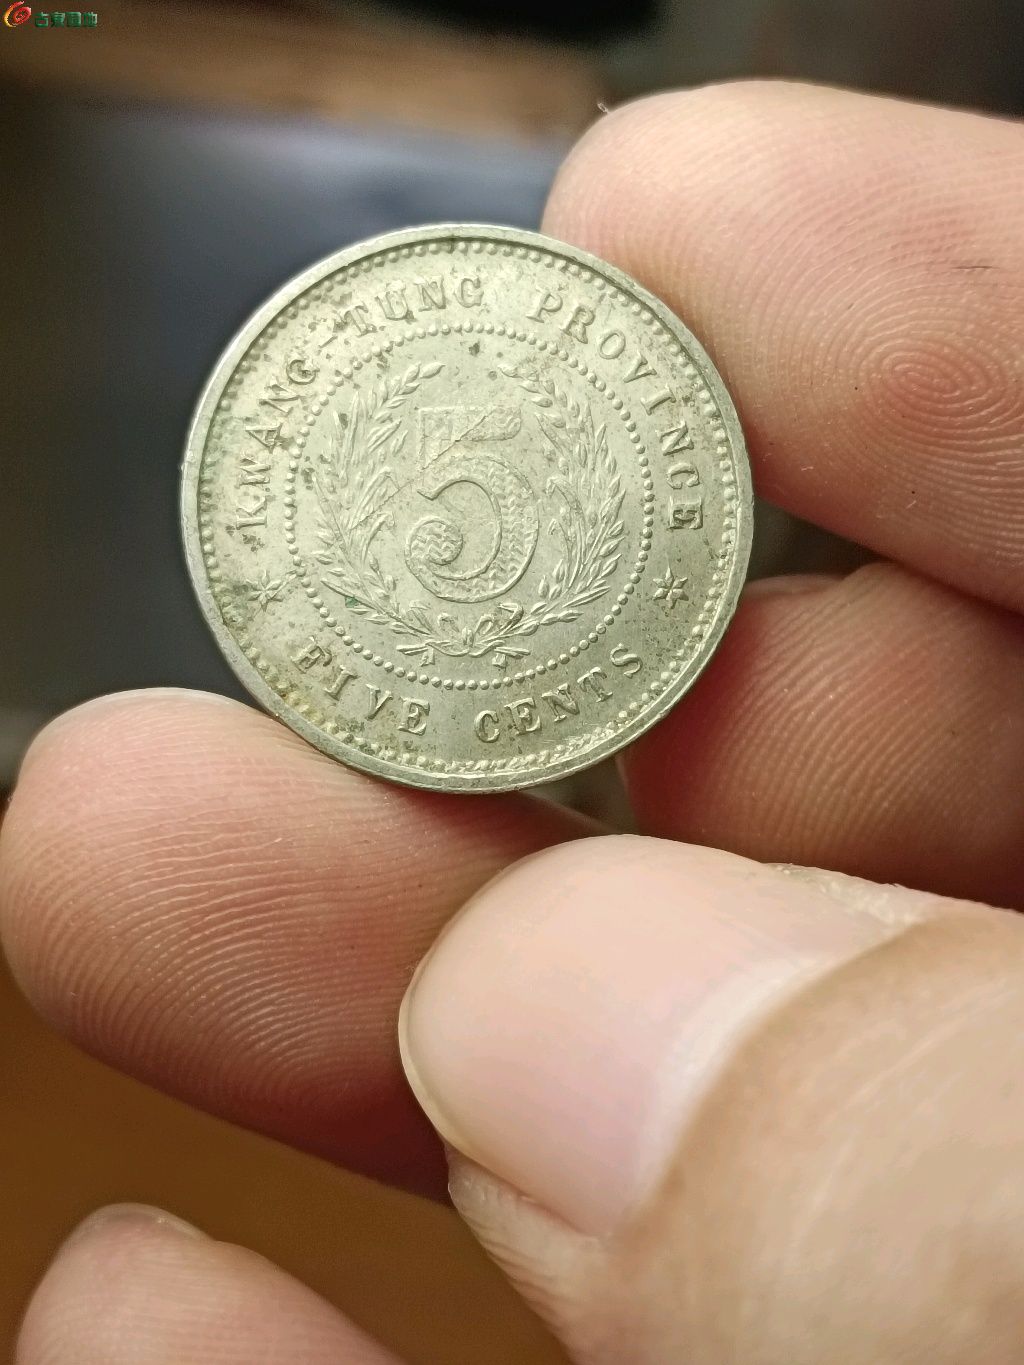 民国十二年广东省造半毫镍币实物图片及最新成交价格行情